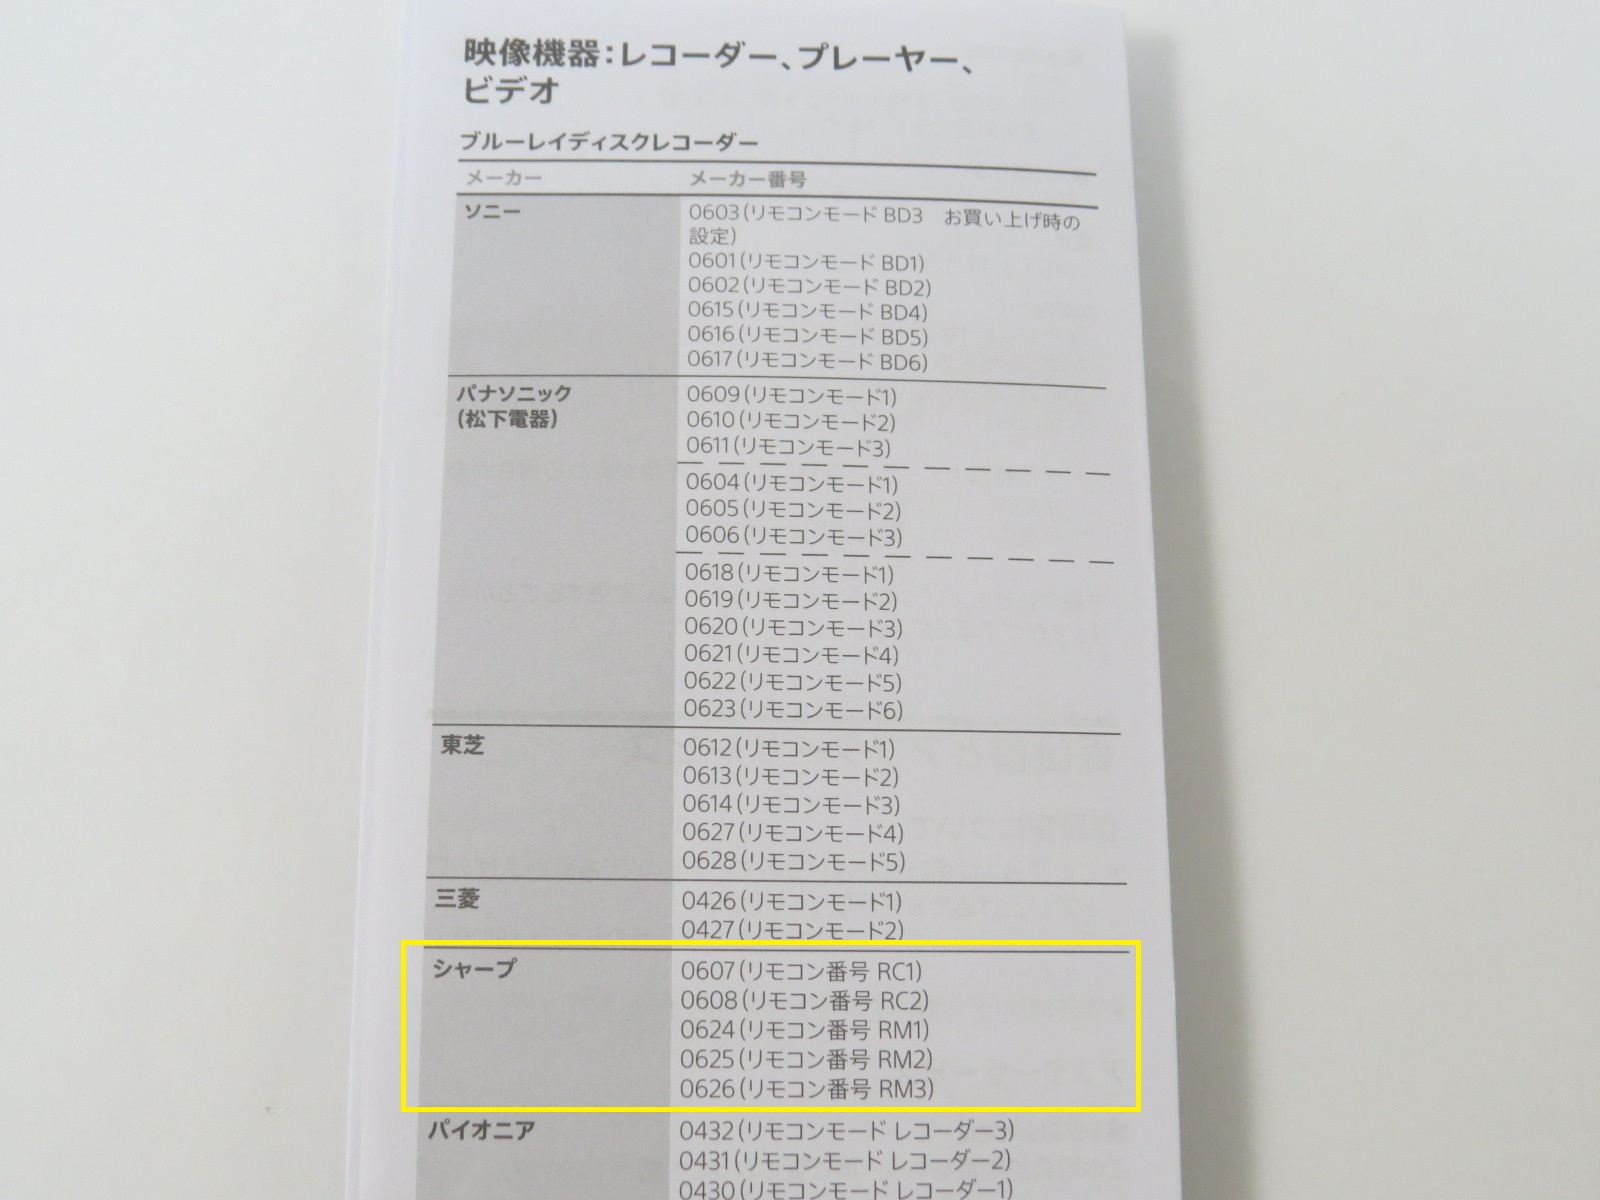 Sony 汎用リモコン(RM-PZ130D)を買ってみた。 | AS400プログラマーの日常